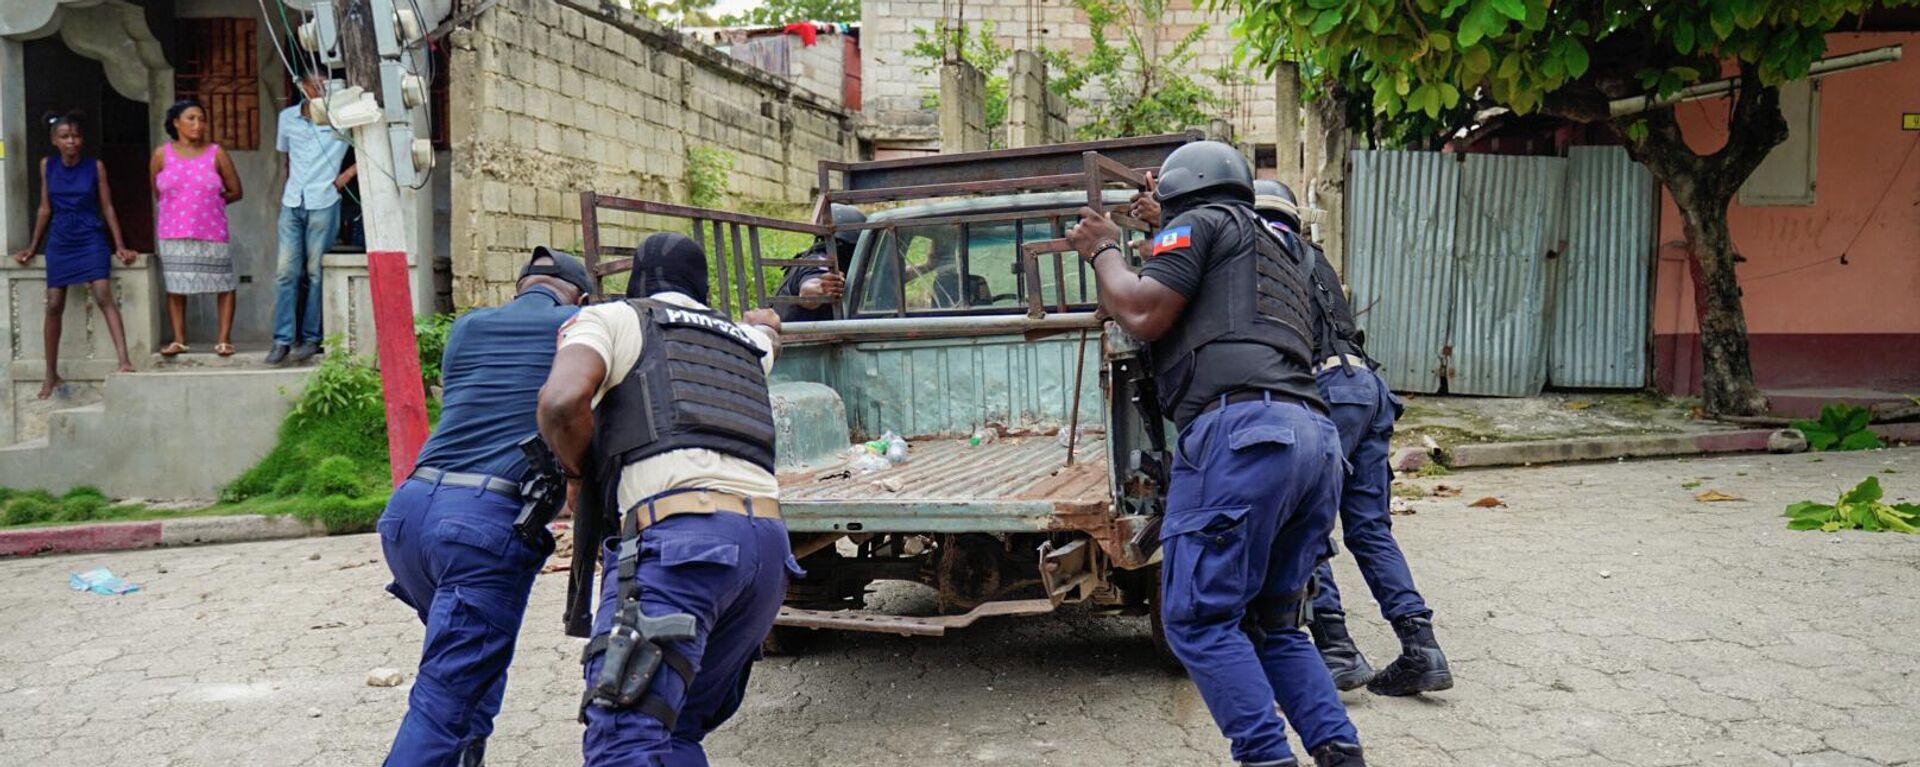 Policía de Haití mueve un vehículo usado en una barricada - Sputnik Mundo, 1920, 13.09.2022